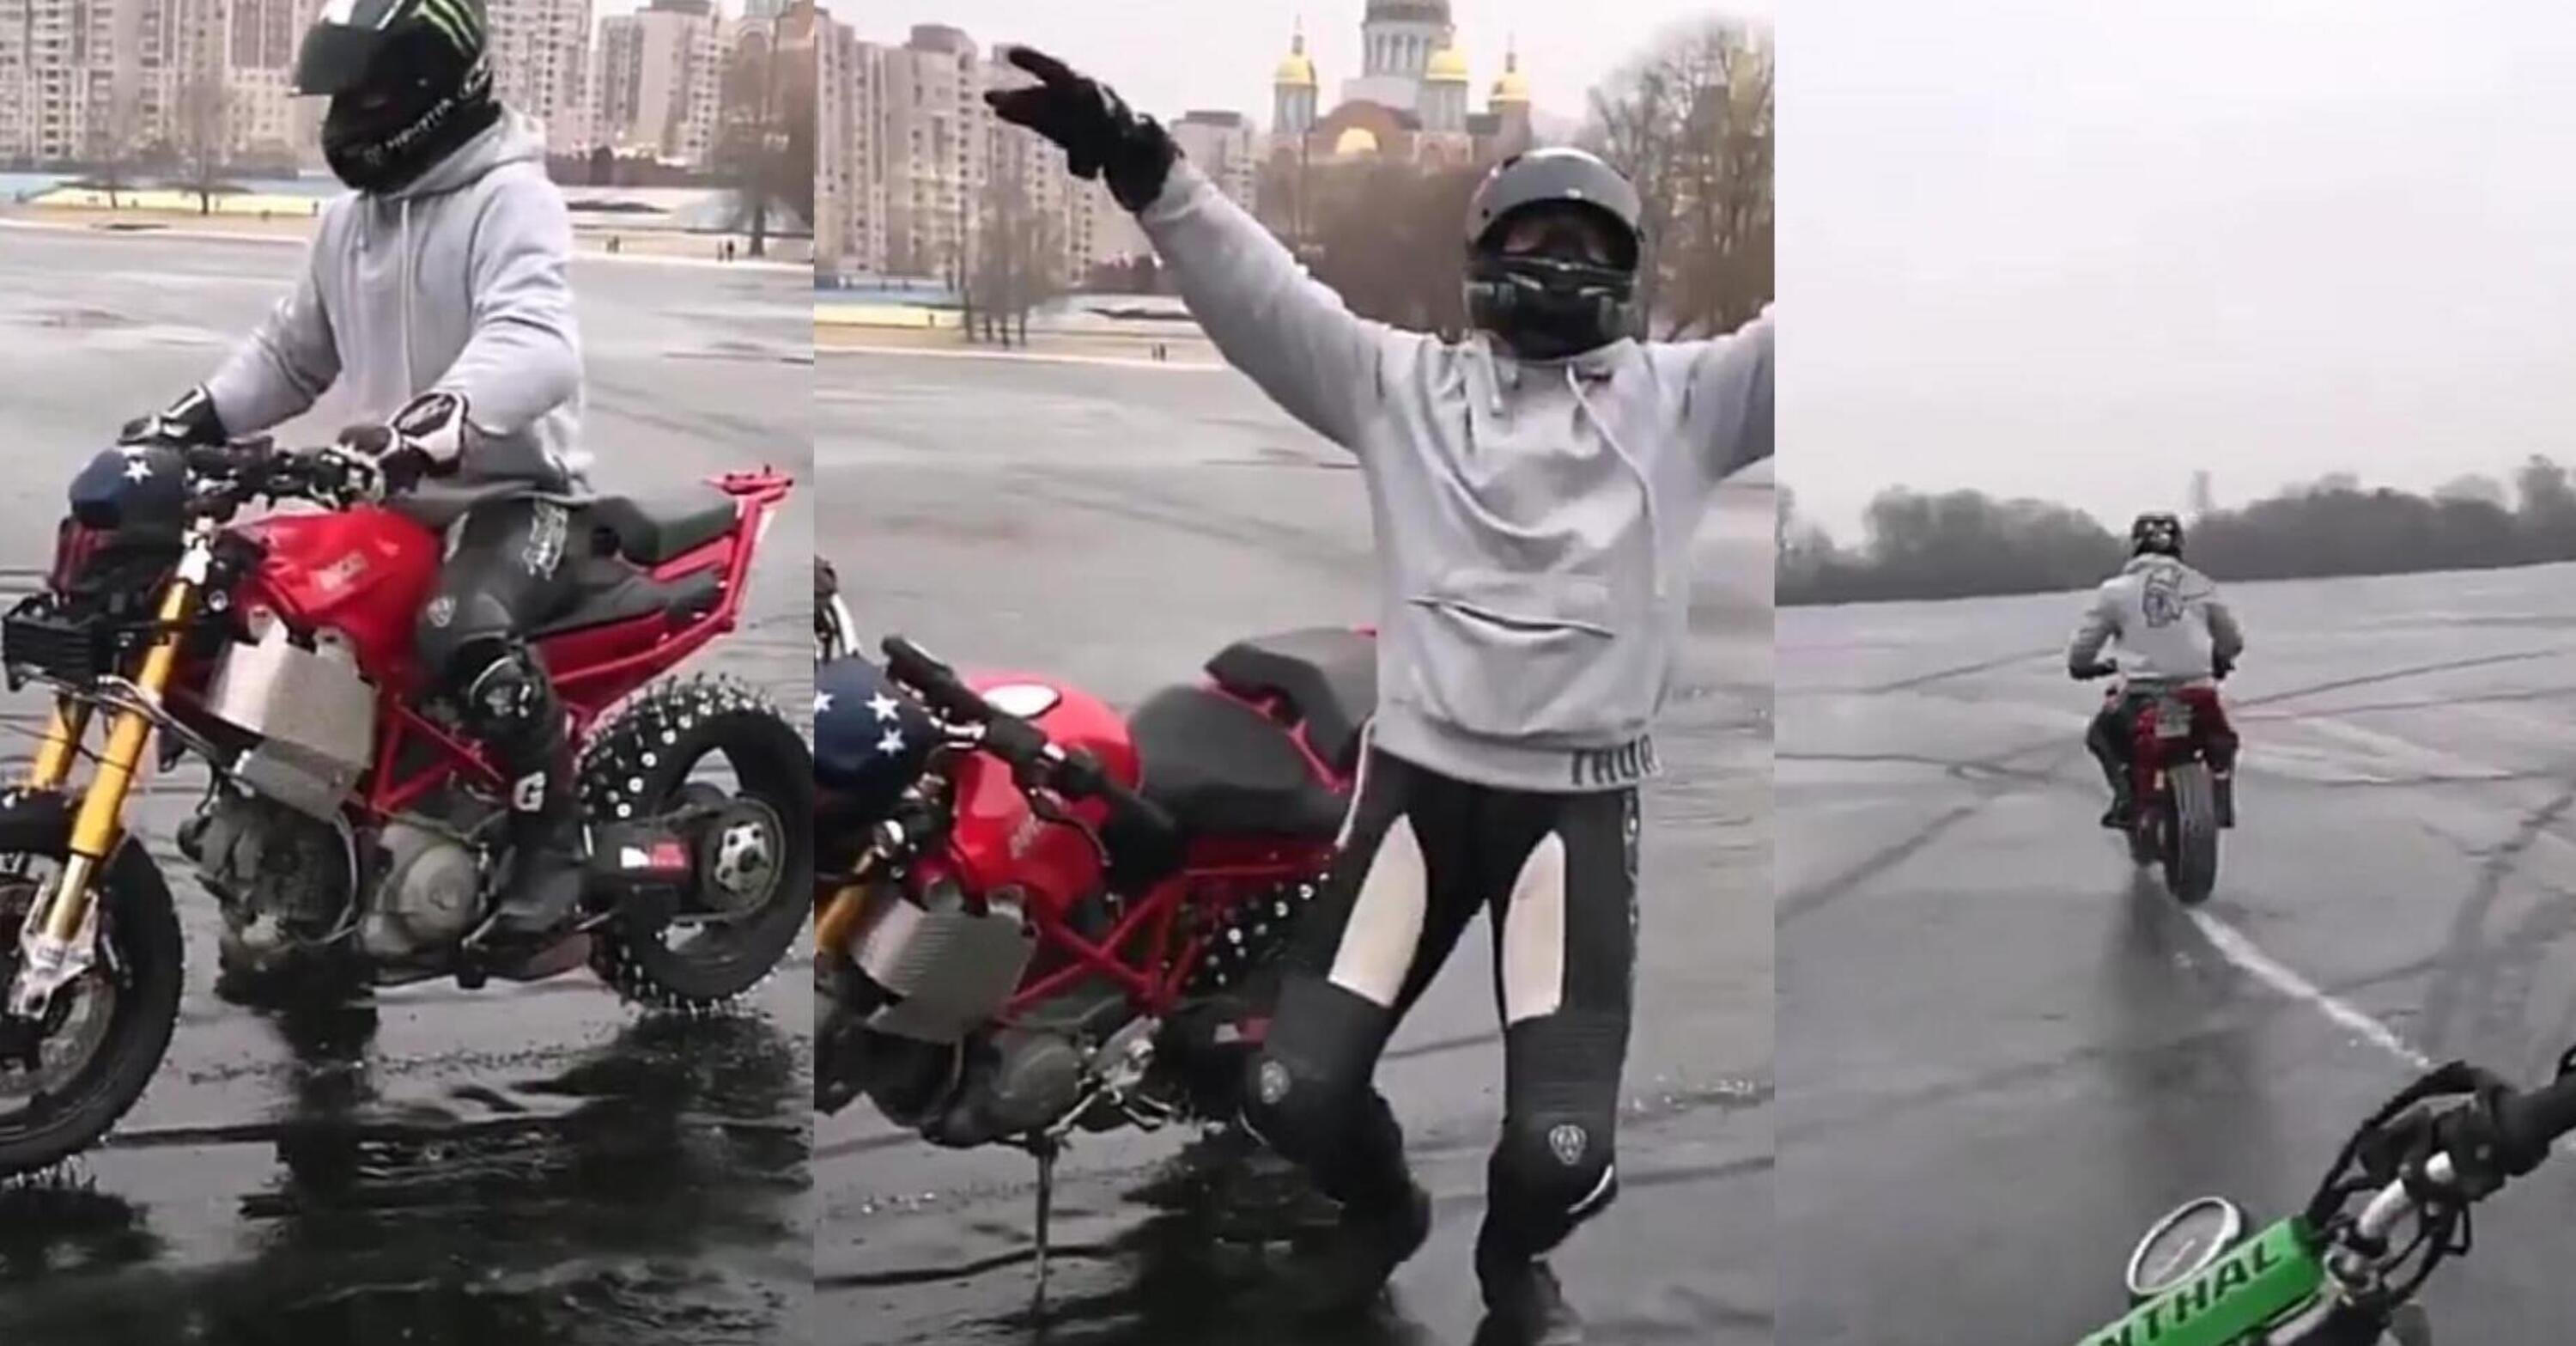 Divertiamoci sul ghiaccio con la Ducati... oooops!! [VIDEO]